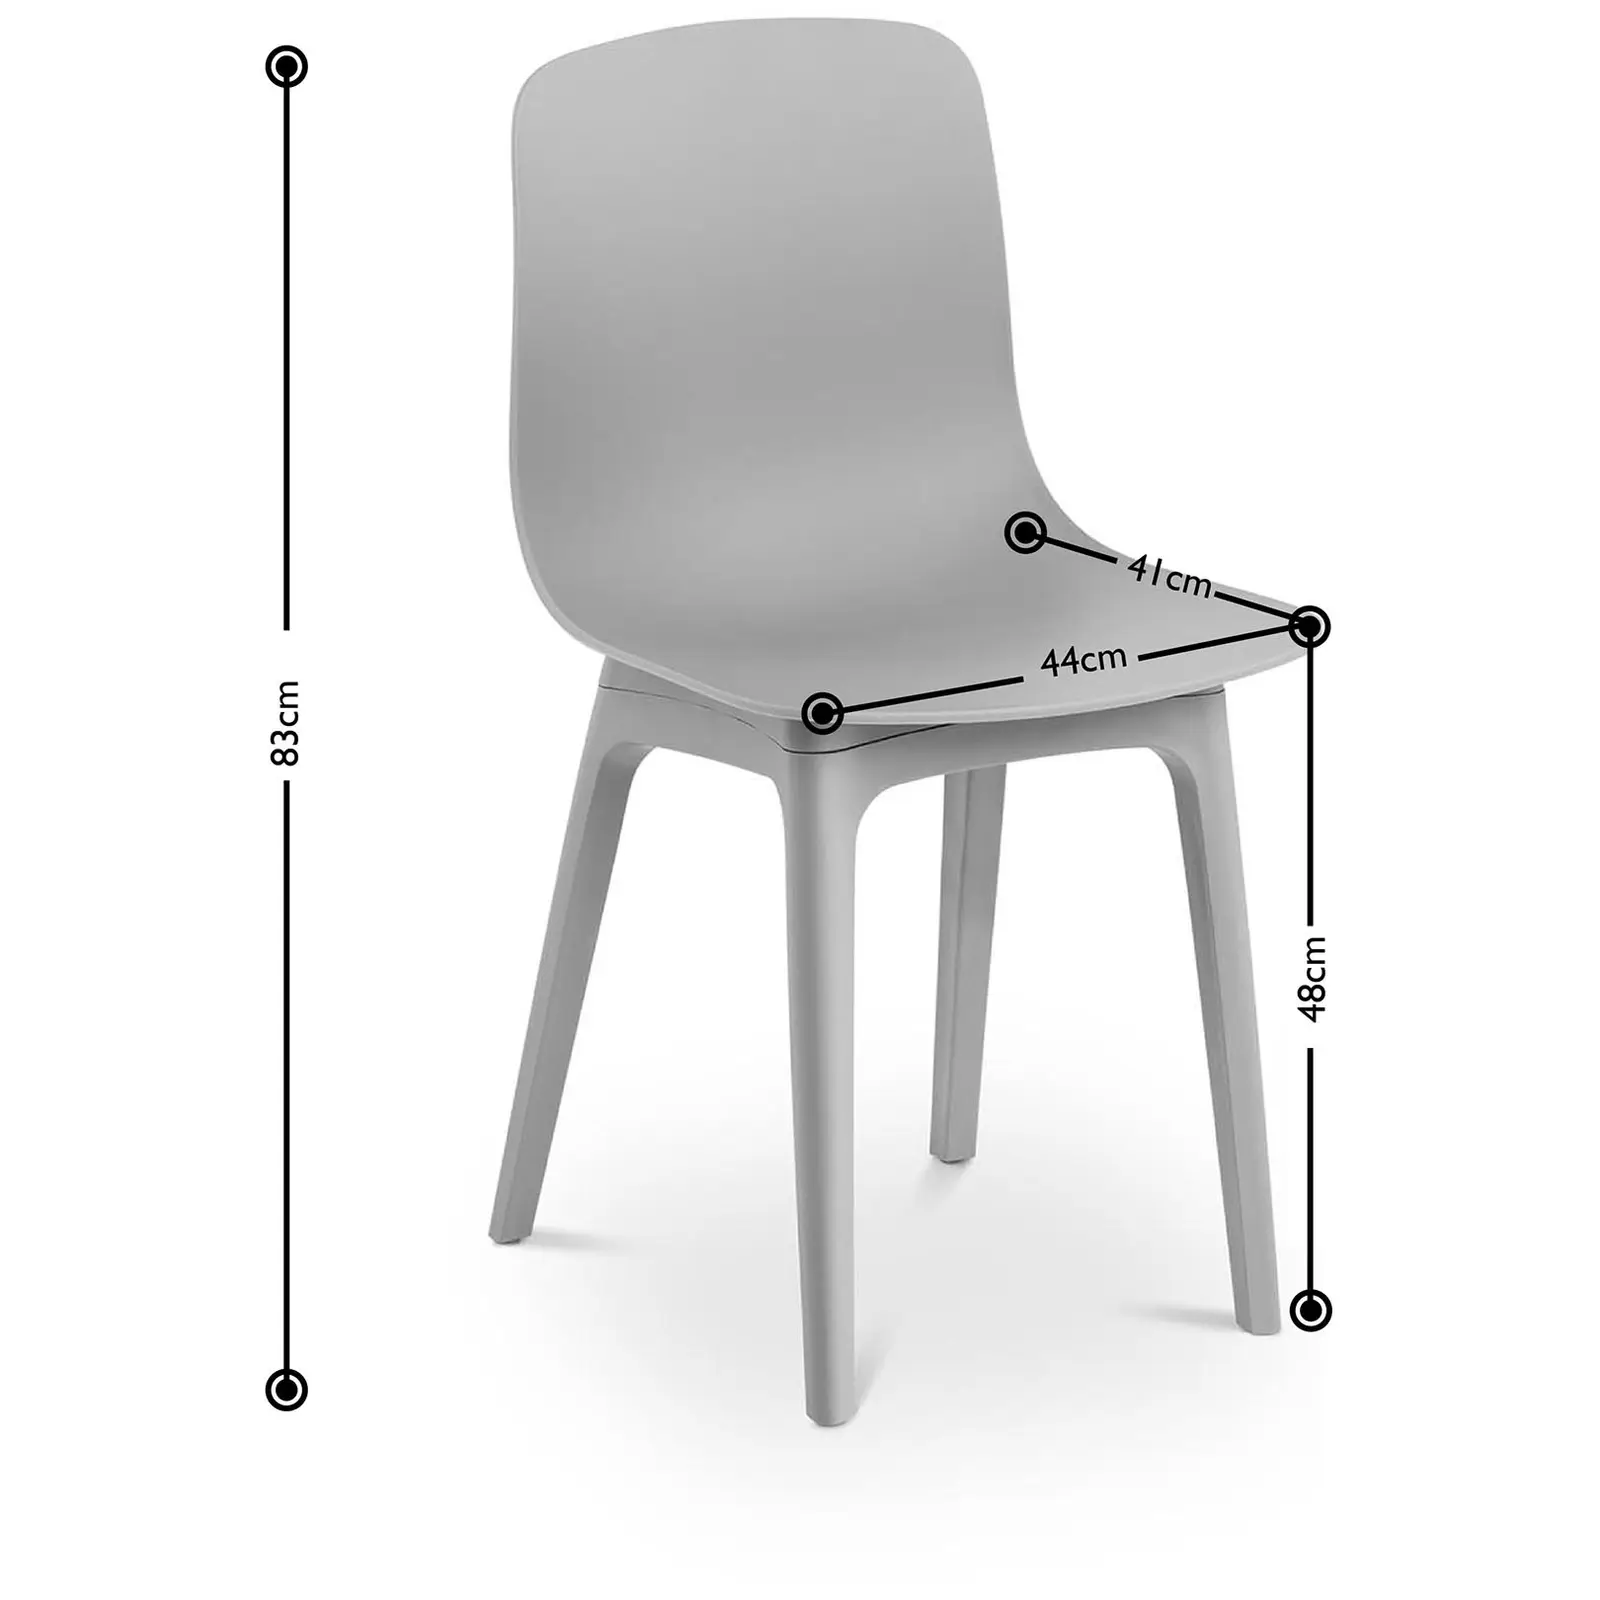 Stol - Set med 2 - Upp till 150 kg - Sittyta 44 x 41 cm - Grå